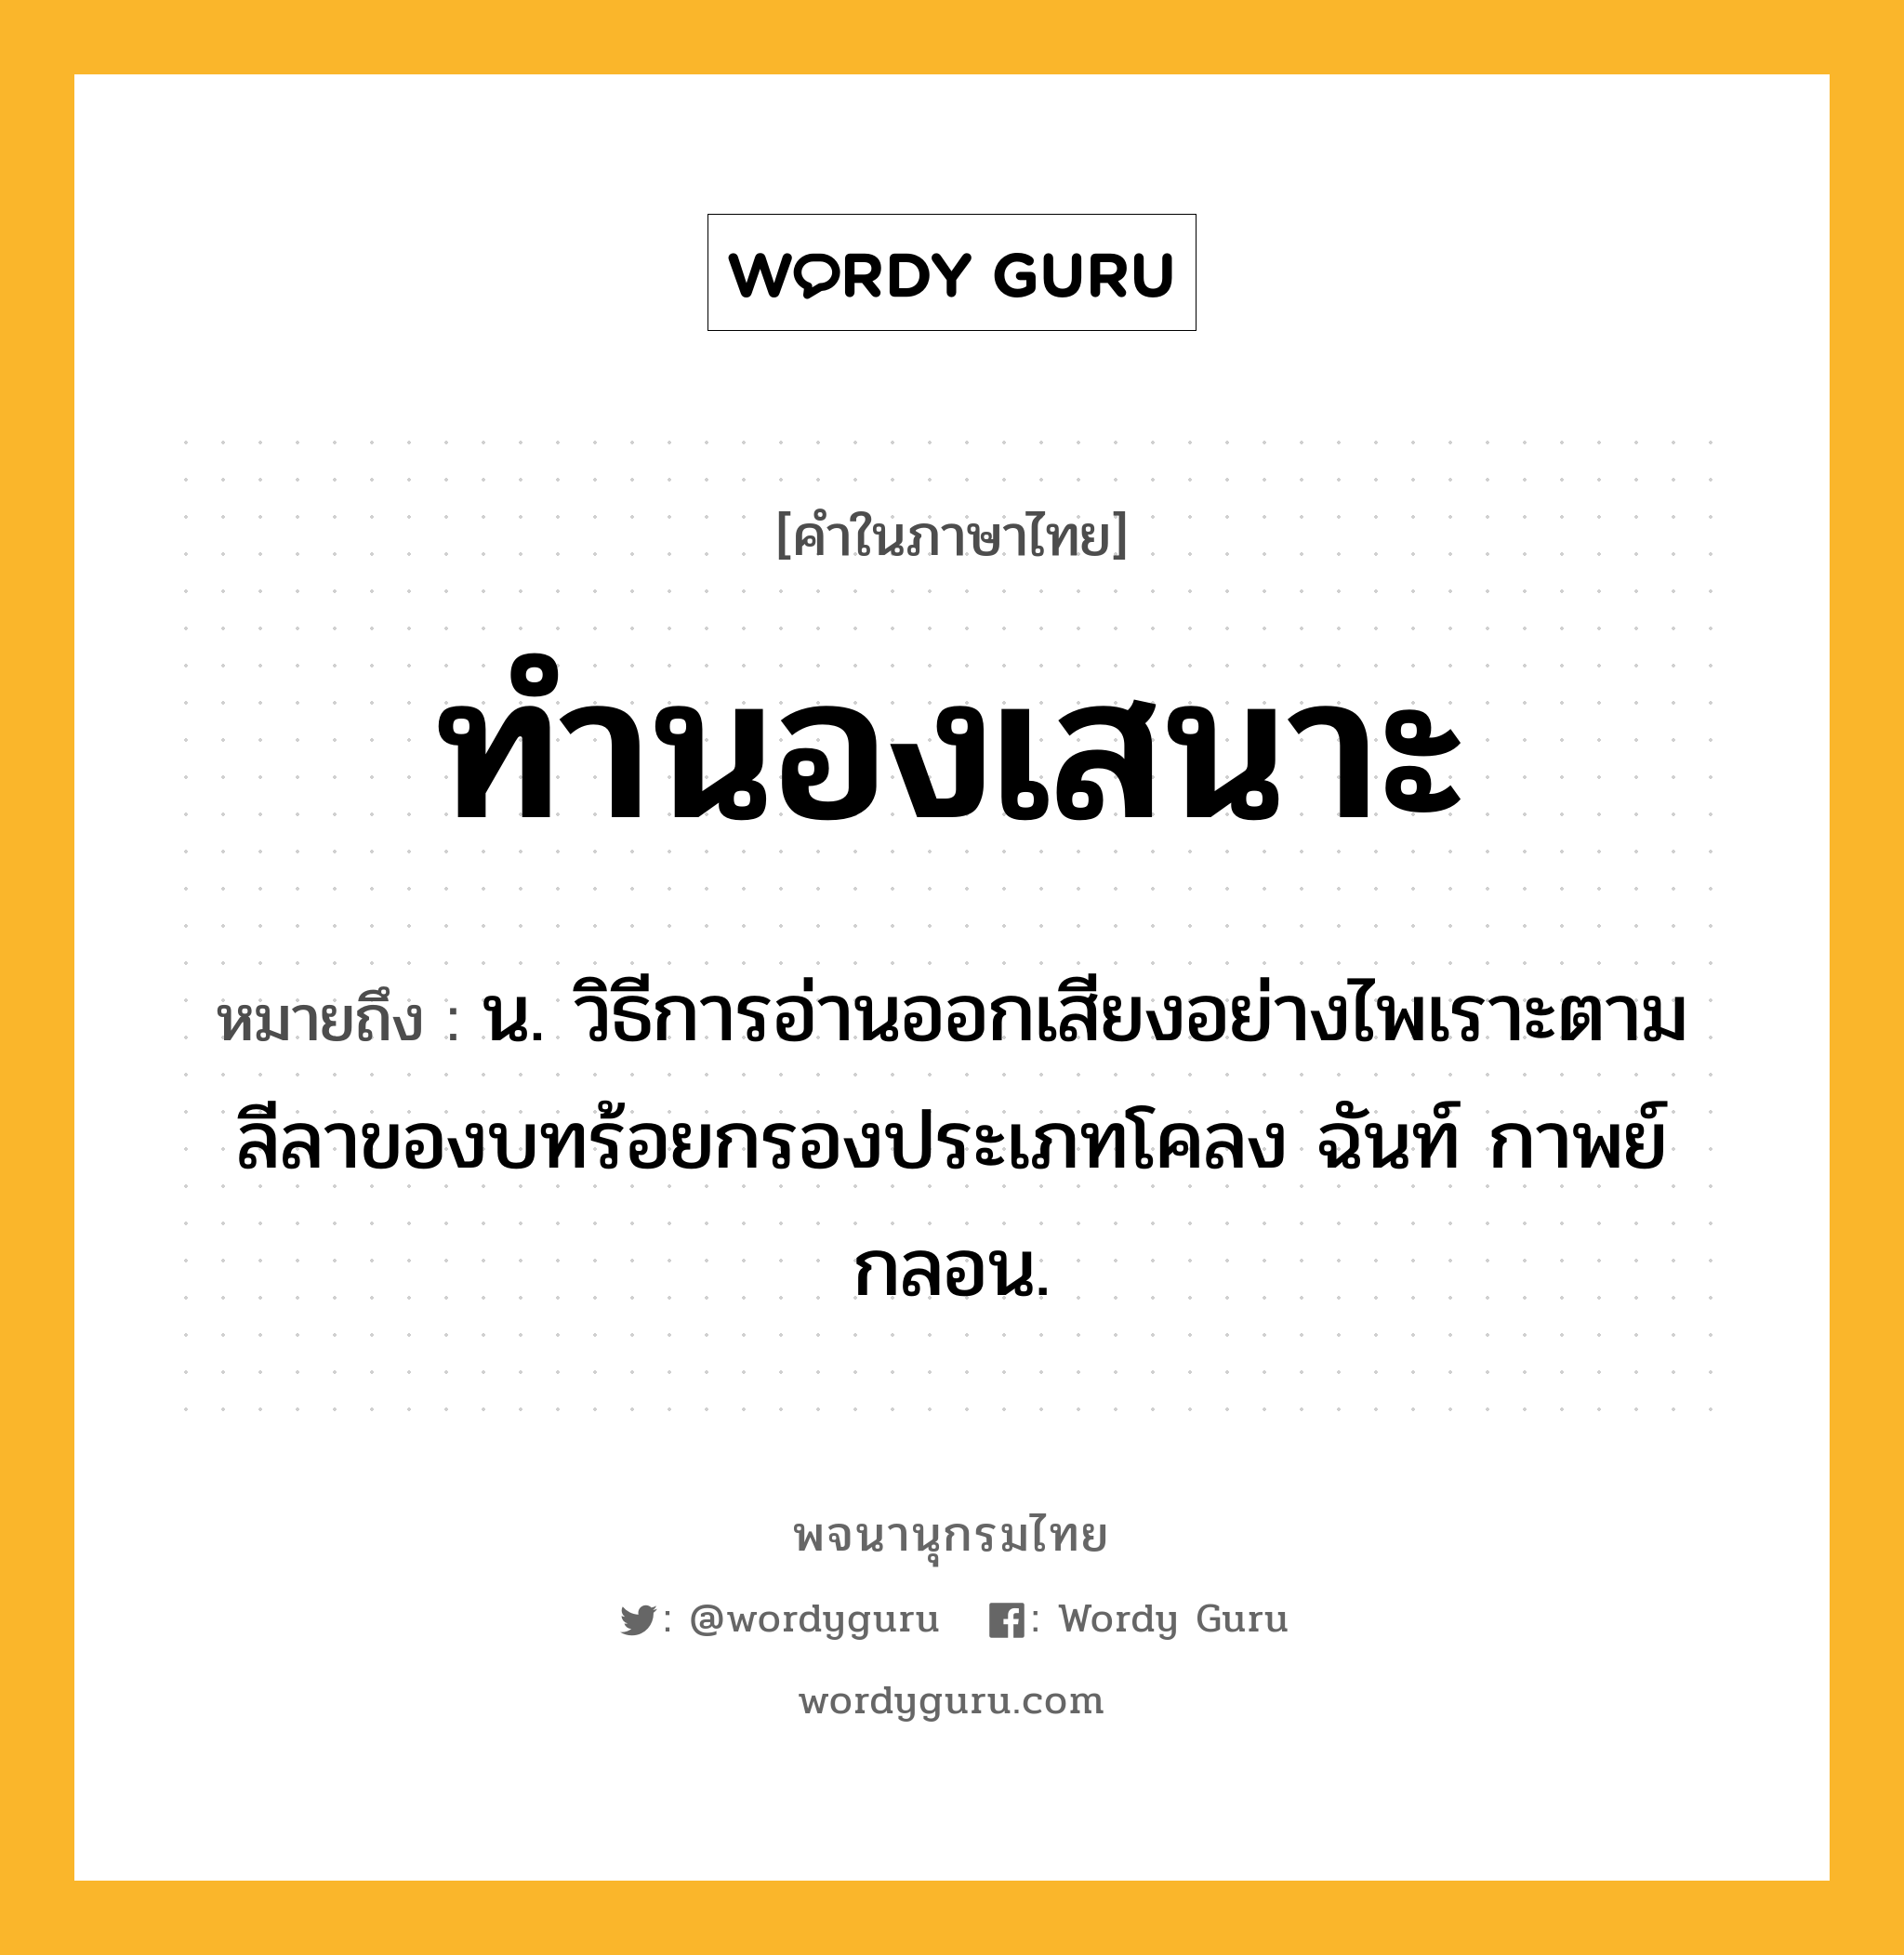 ทำนองเสนาะ ความหมาย หมายถึงอะไร?, คำในภาษาไทย ทำนองเสนาะ หมายถึง น. วิธีการอ่านออกเสียงอย่างไพเราะตามลีลาของบทร้อยกรองประเภทโคลง ฉันท์ กาพย์ กลอน.